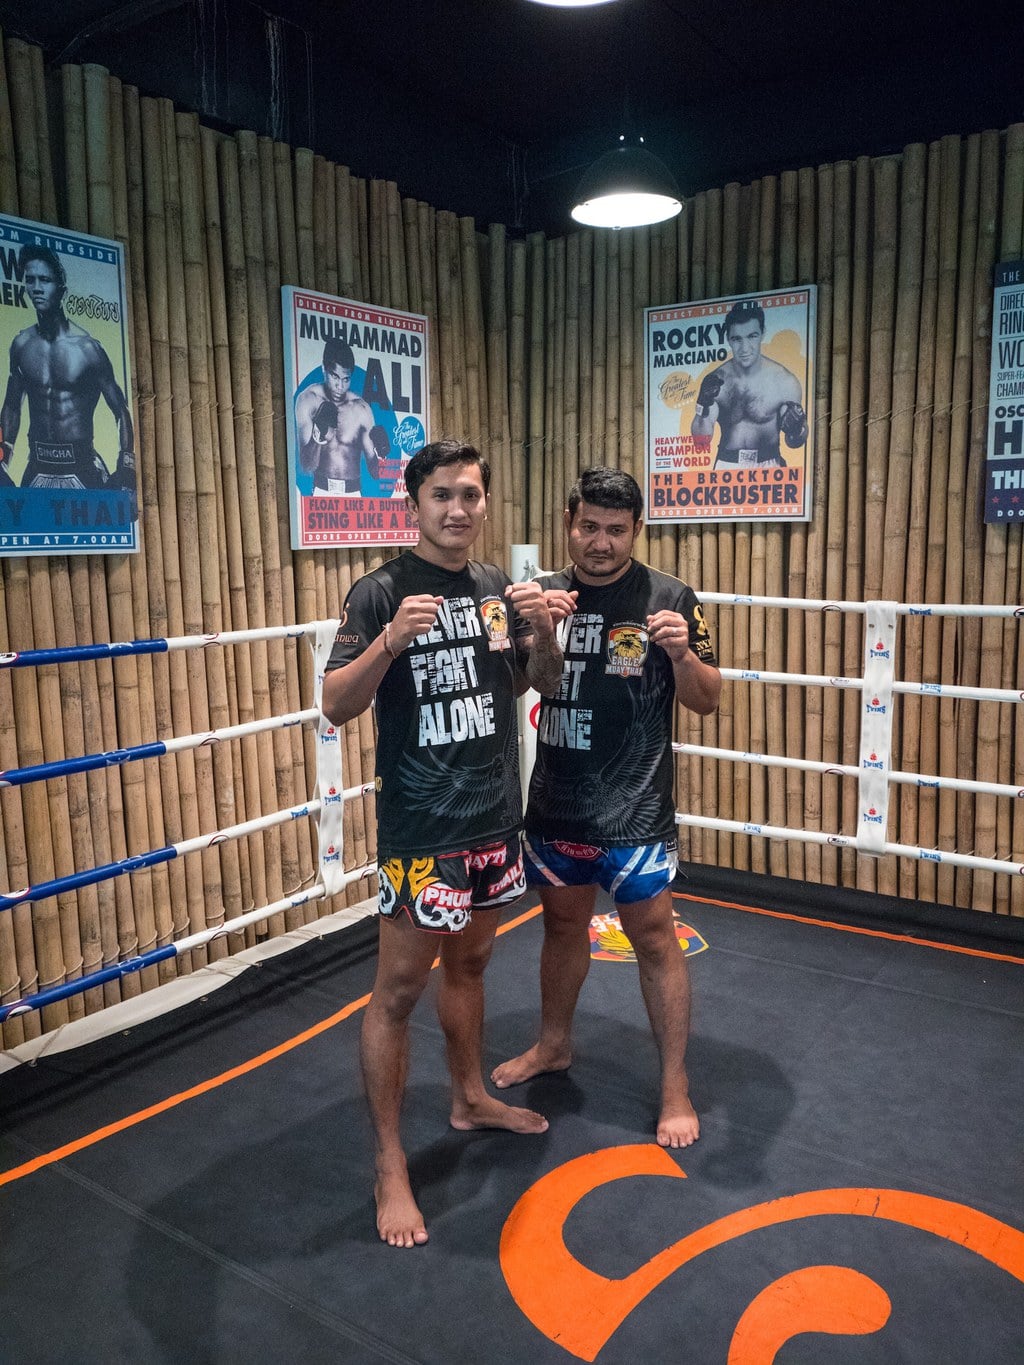 "Thai boxing at Sri Panwa"